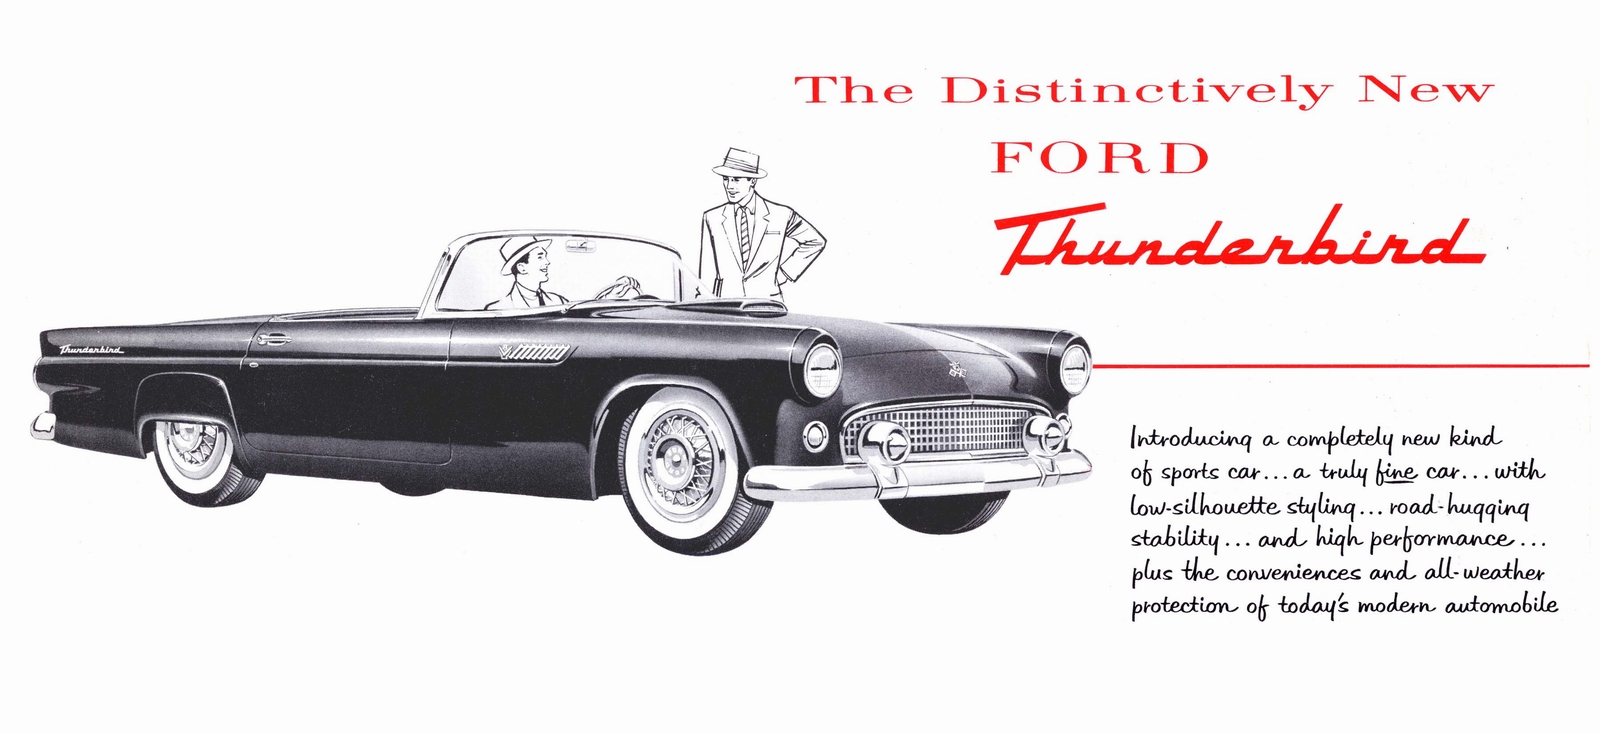 n_1955 Ford Thunderbird Introduction-01.jpg